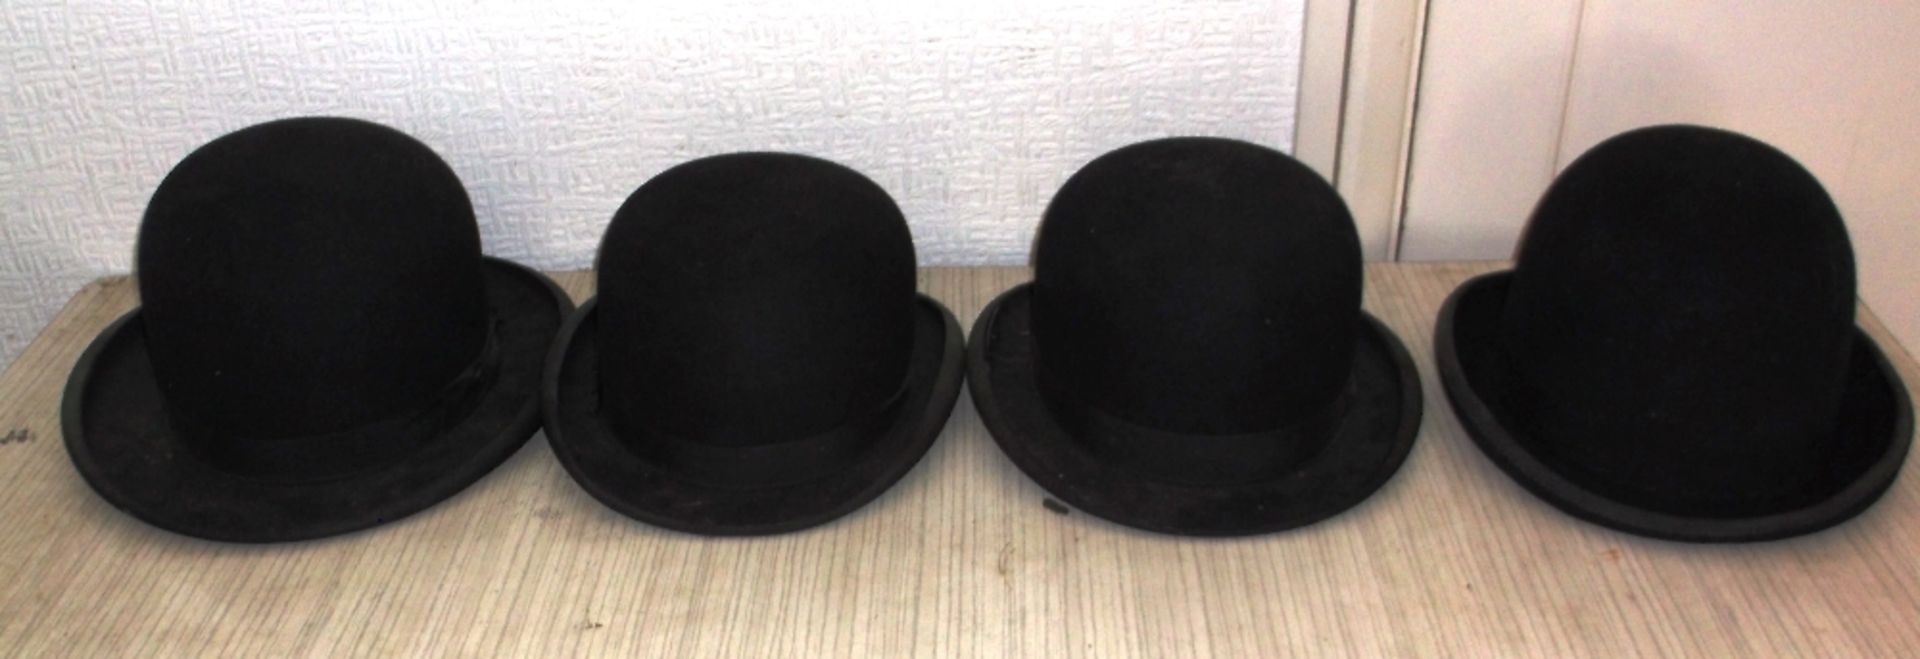 4 bowler hats